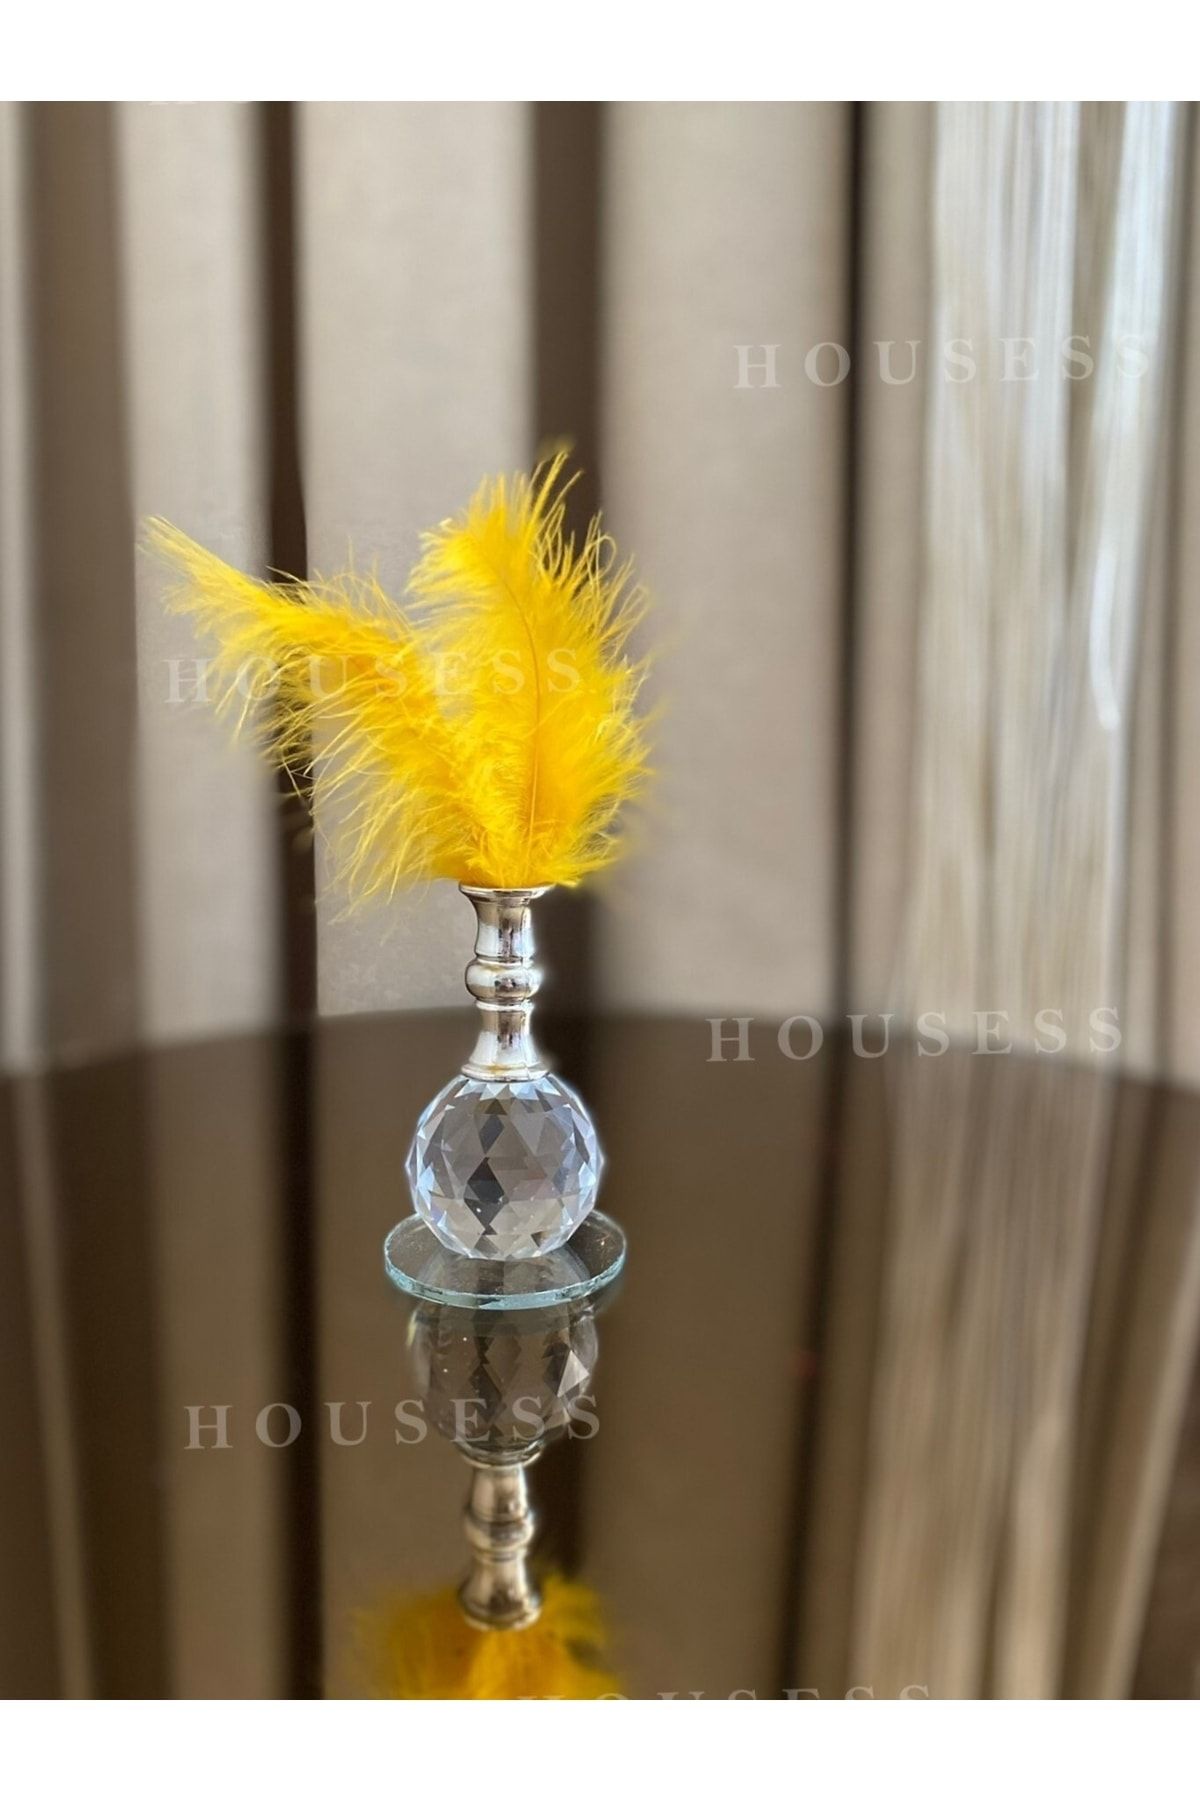 Housess 1 Adet Sarı Tüylü Gümüş Kristal Top Tüylük Dekor Biblo Süs